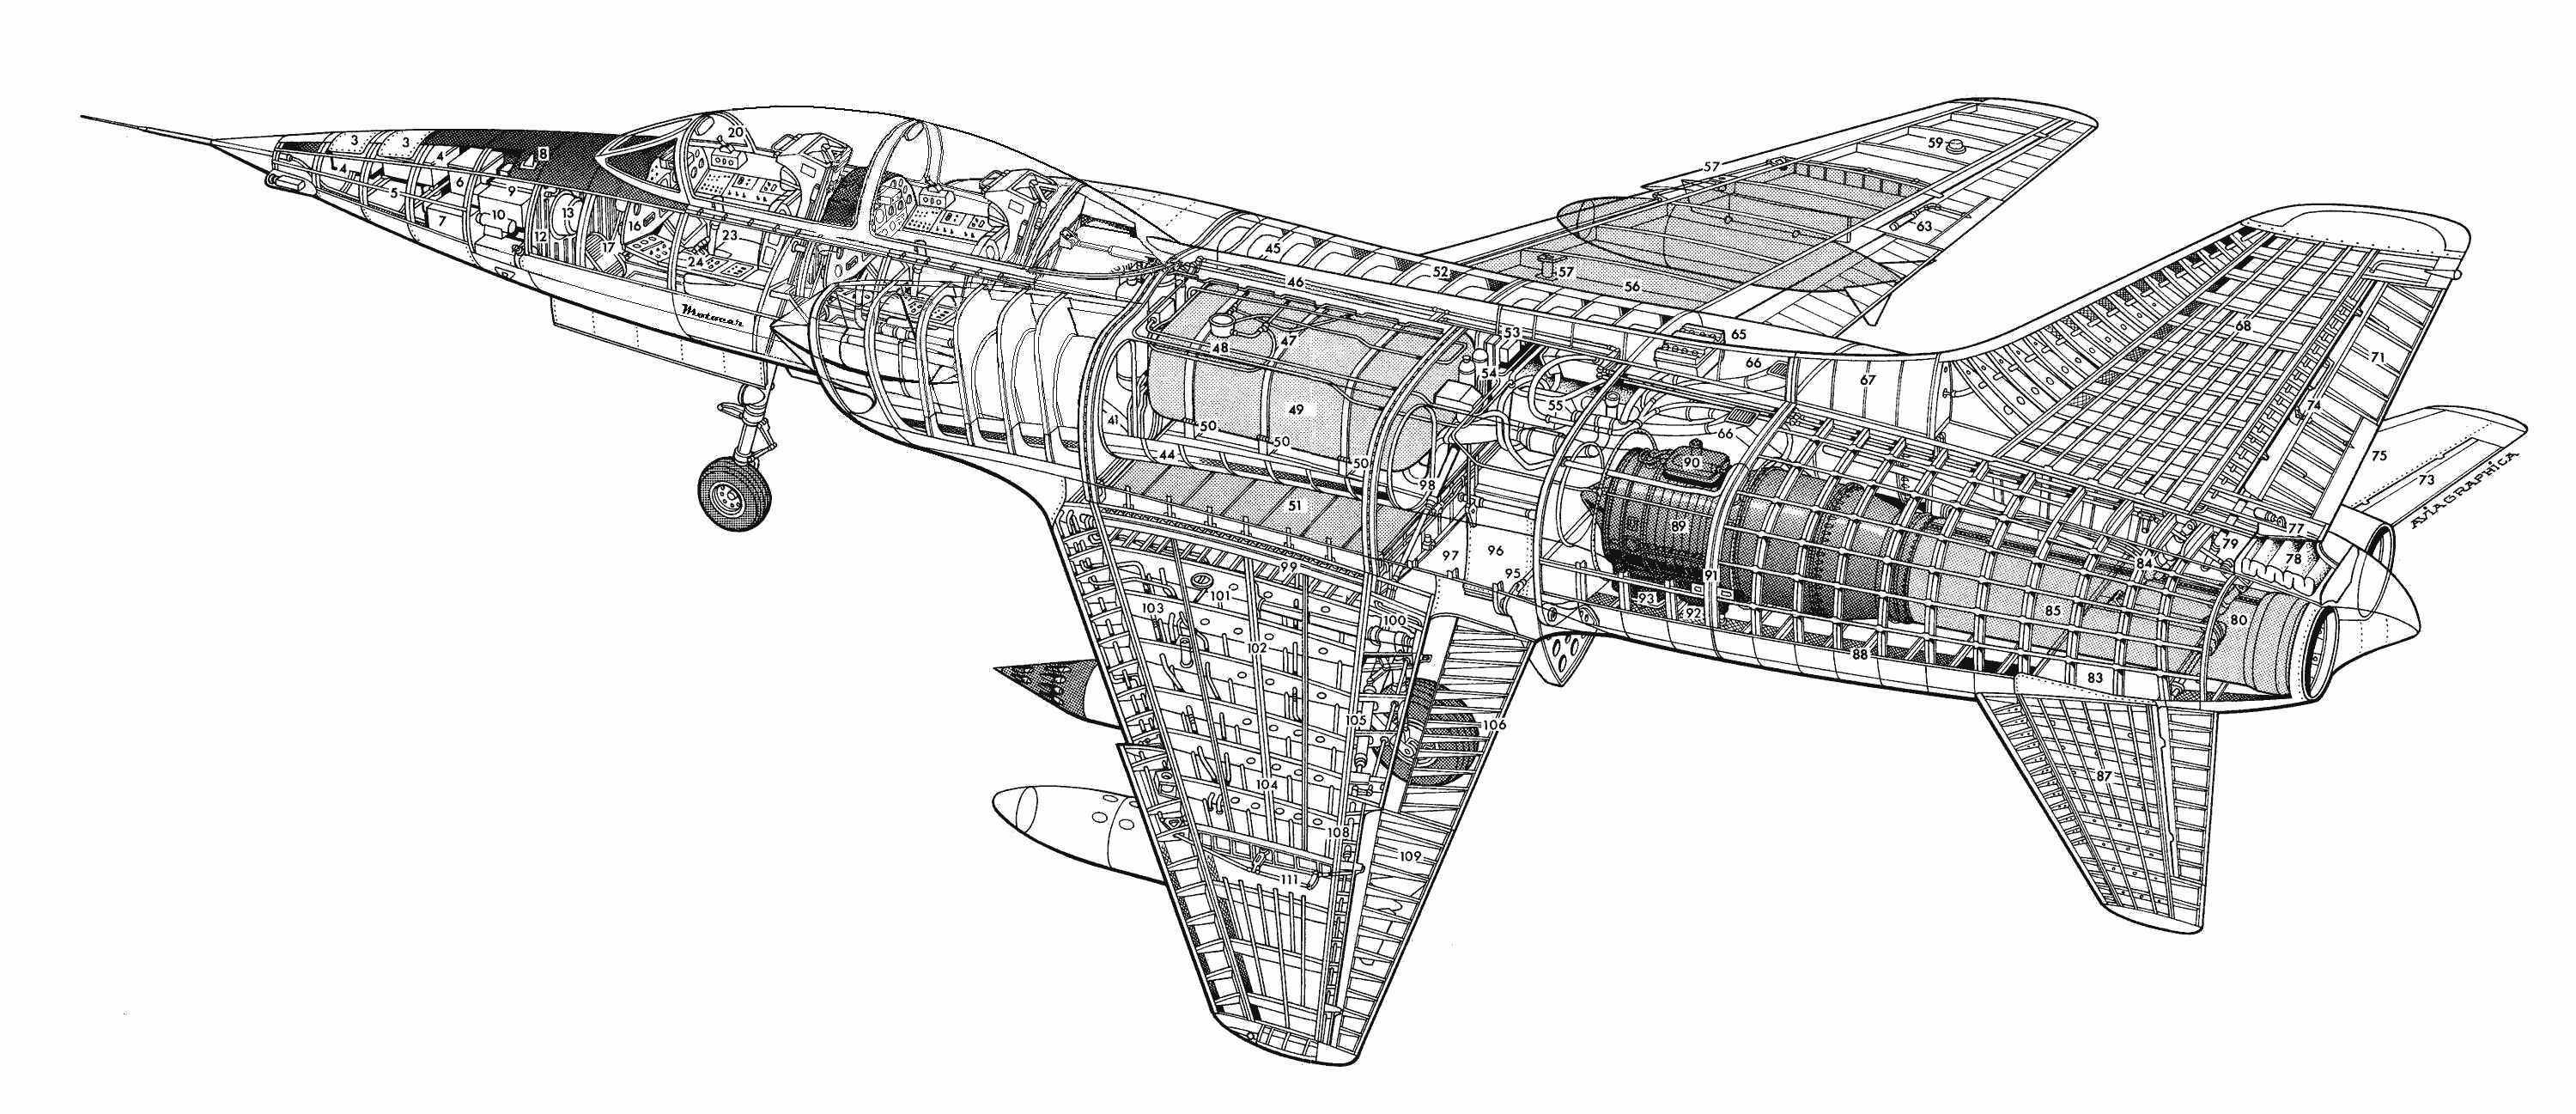 HAL HF-24 Marut cutaway